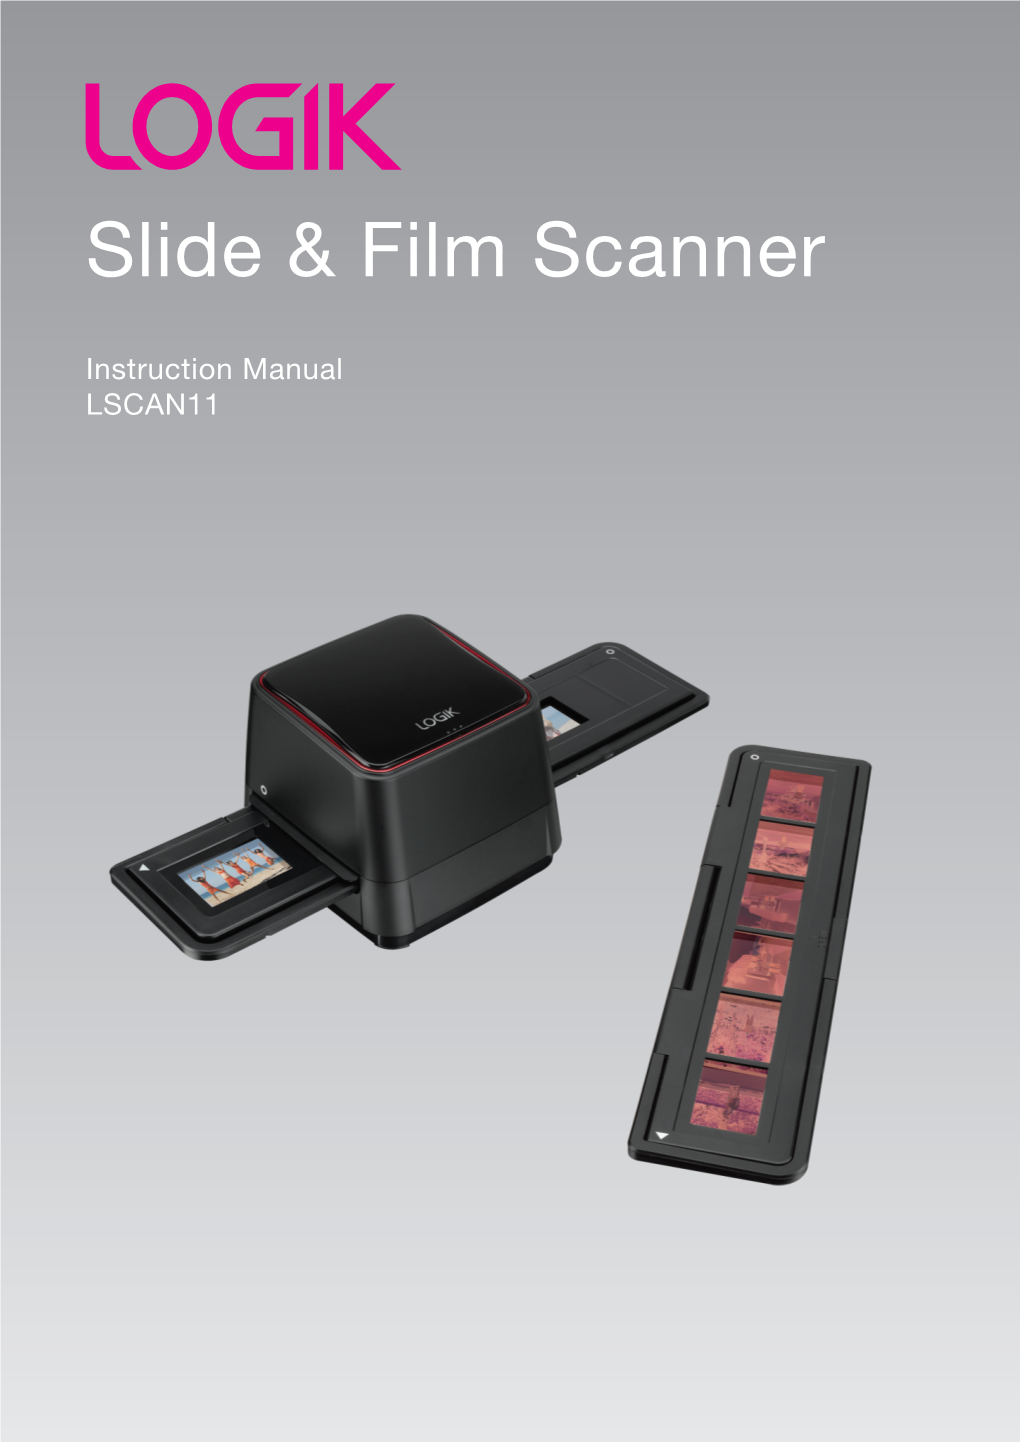 LOGIK SLIDE and FILM SCANNER UK VER LSCAN11 Manual